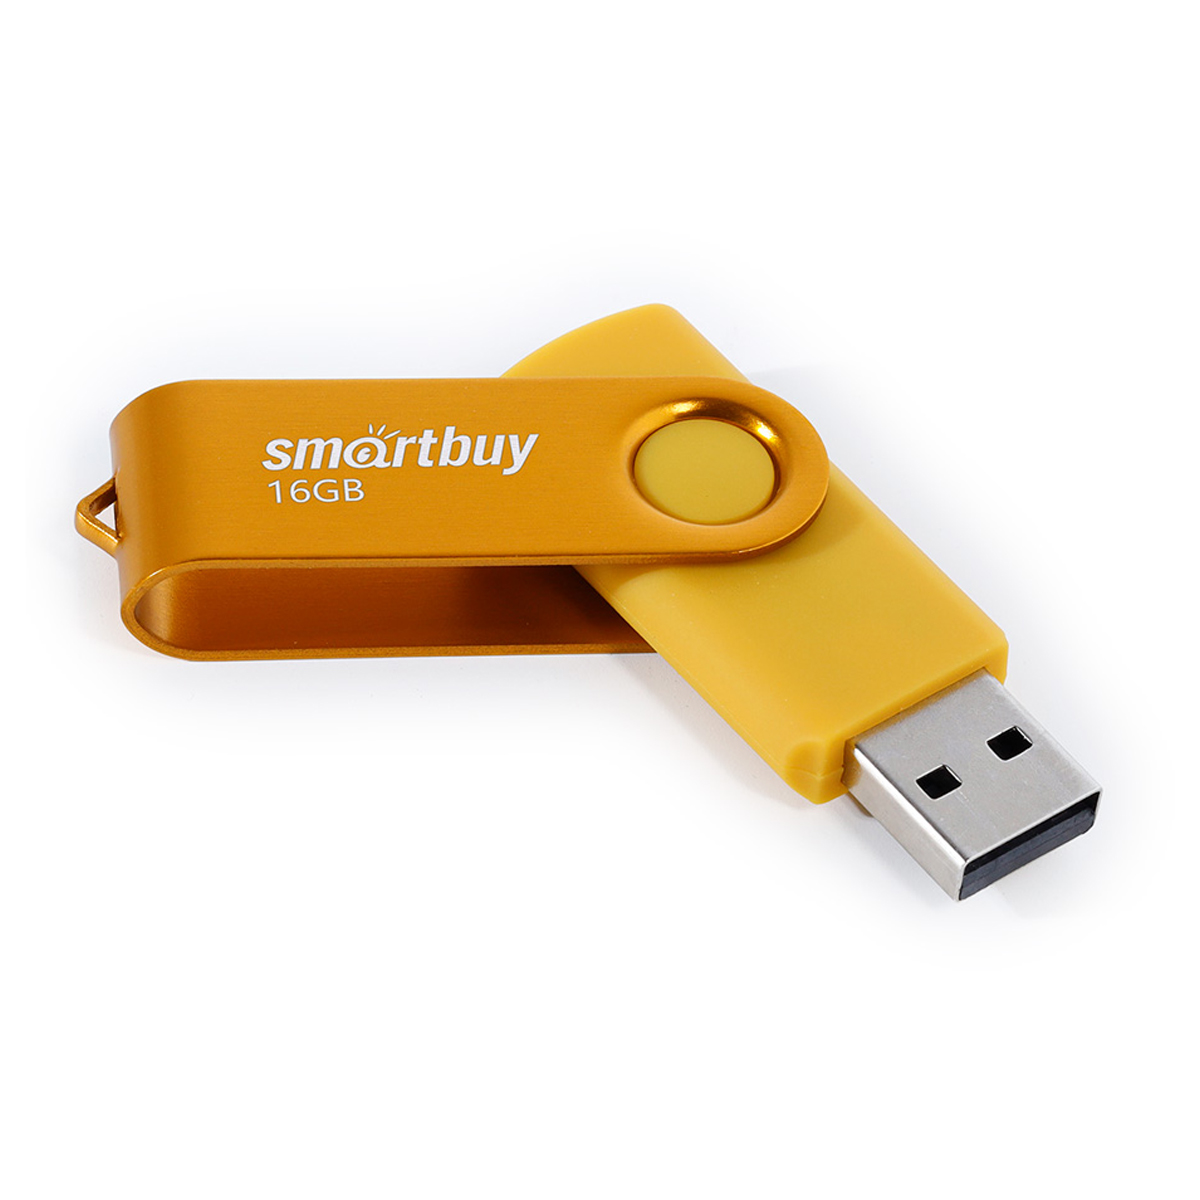  Smart Buy "Twist" 16GB, USB 2.0 Flash Drive 